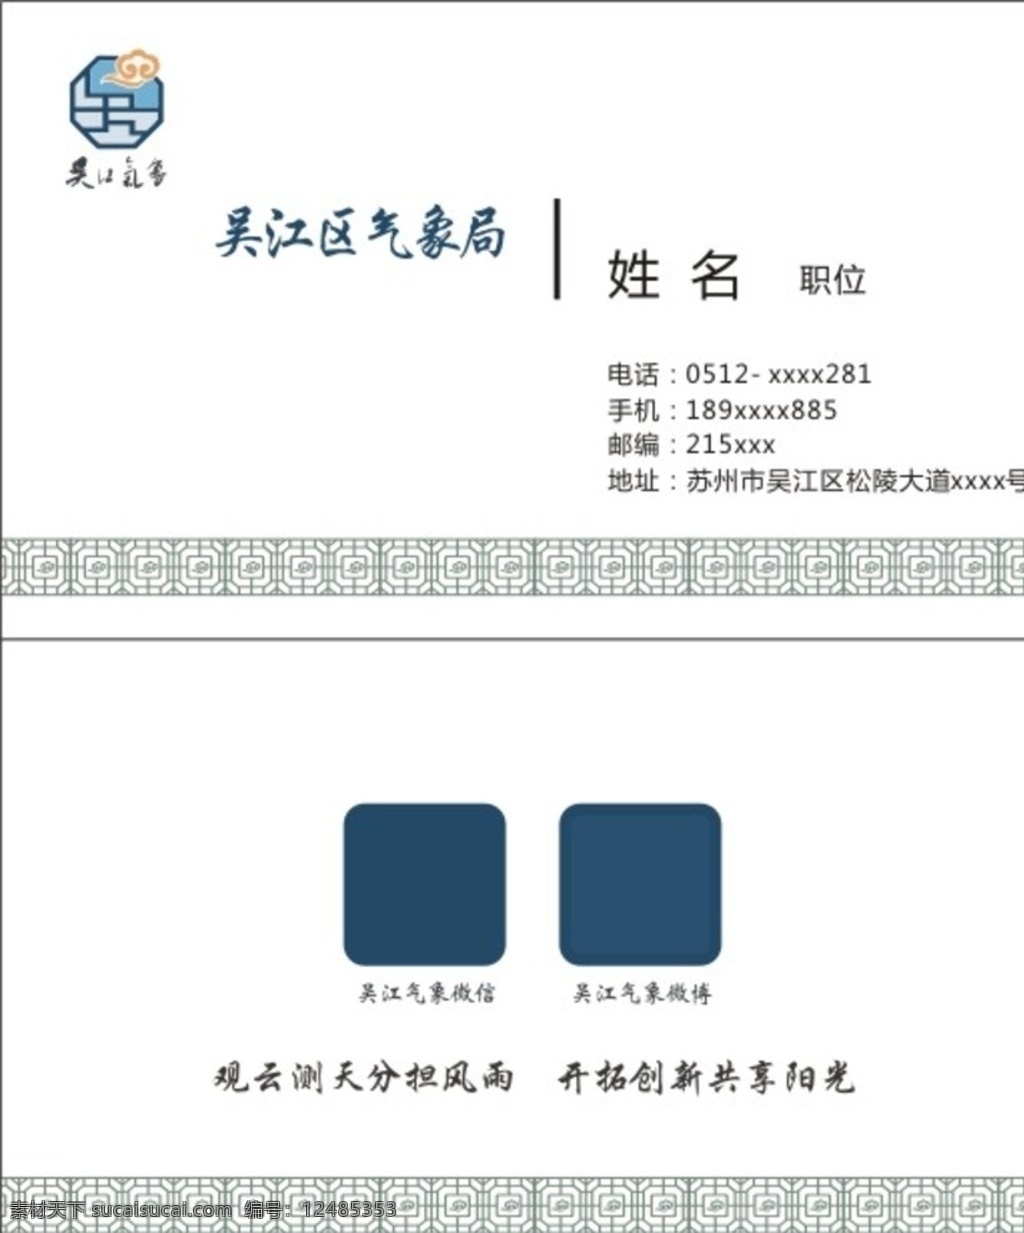 吴江 气象局 名片 模版 天气 vi 名片卡片